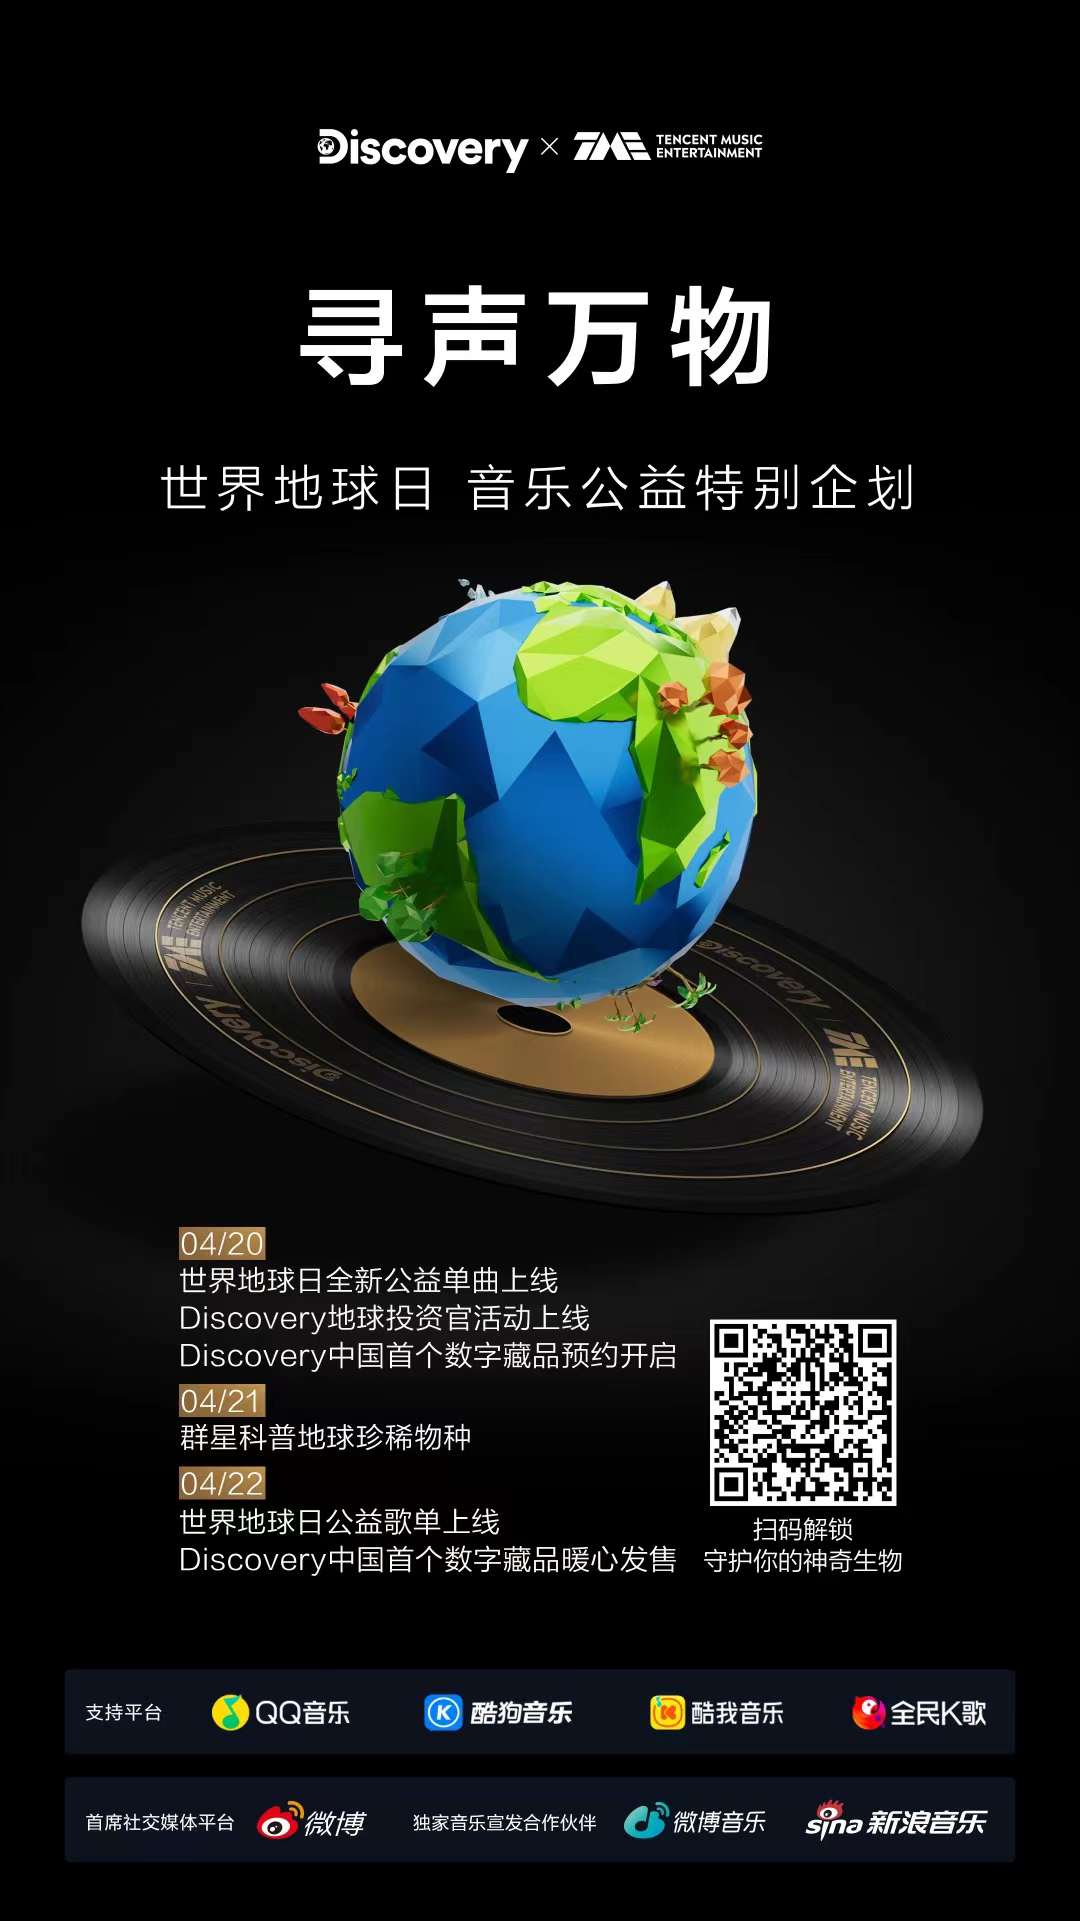 腾讯音乐娱乐 × Discovery 邀你为地球「投资」